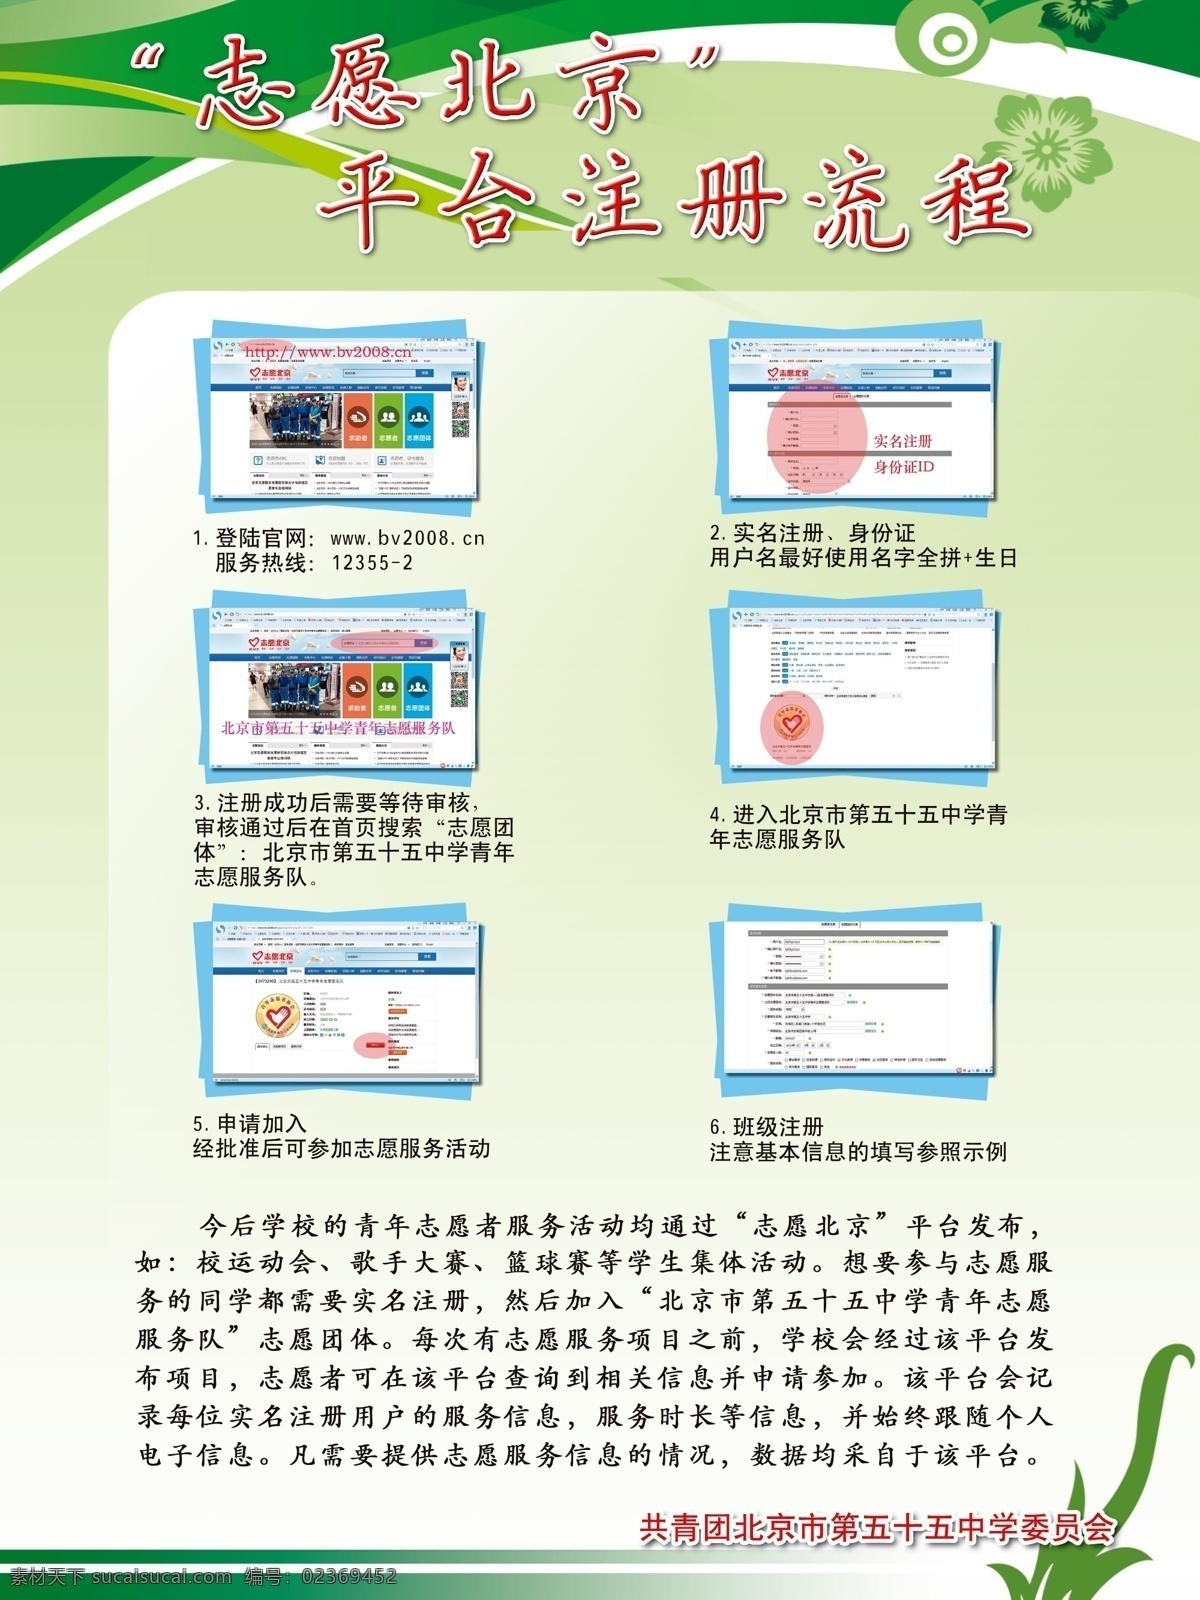 志愿 北京 平台 注册 流程 志愿北京 平台注册流程 注册流程 绿色底图 绿色背景 清新背景 清新底图 展板底图 展板背景